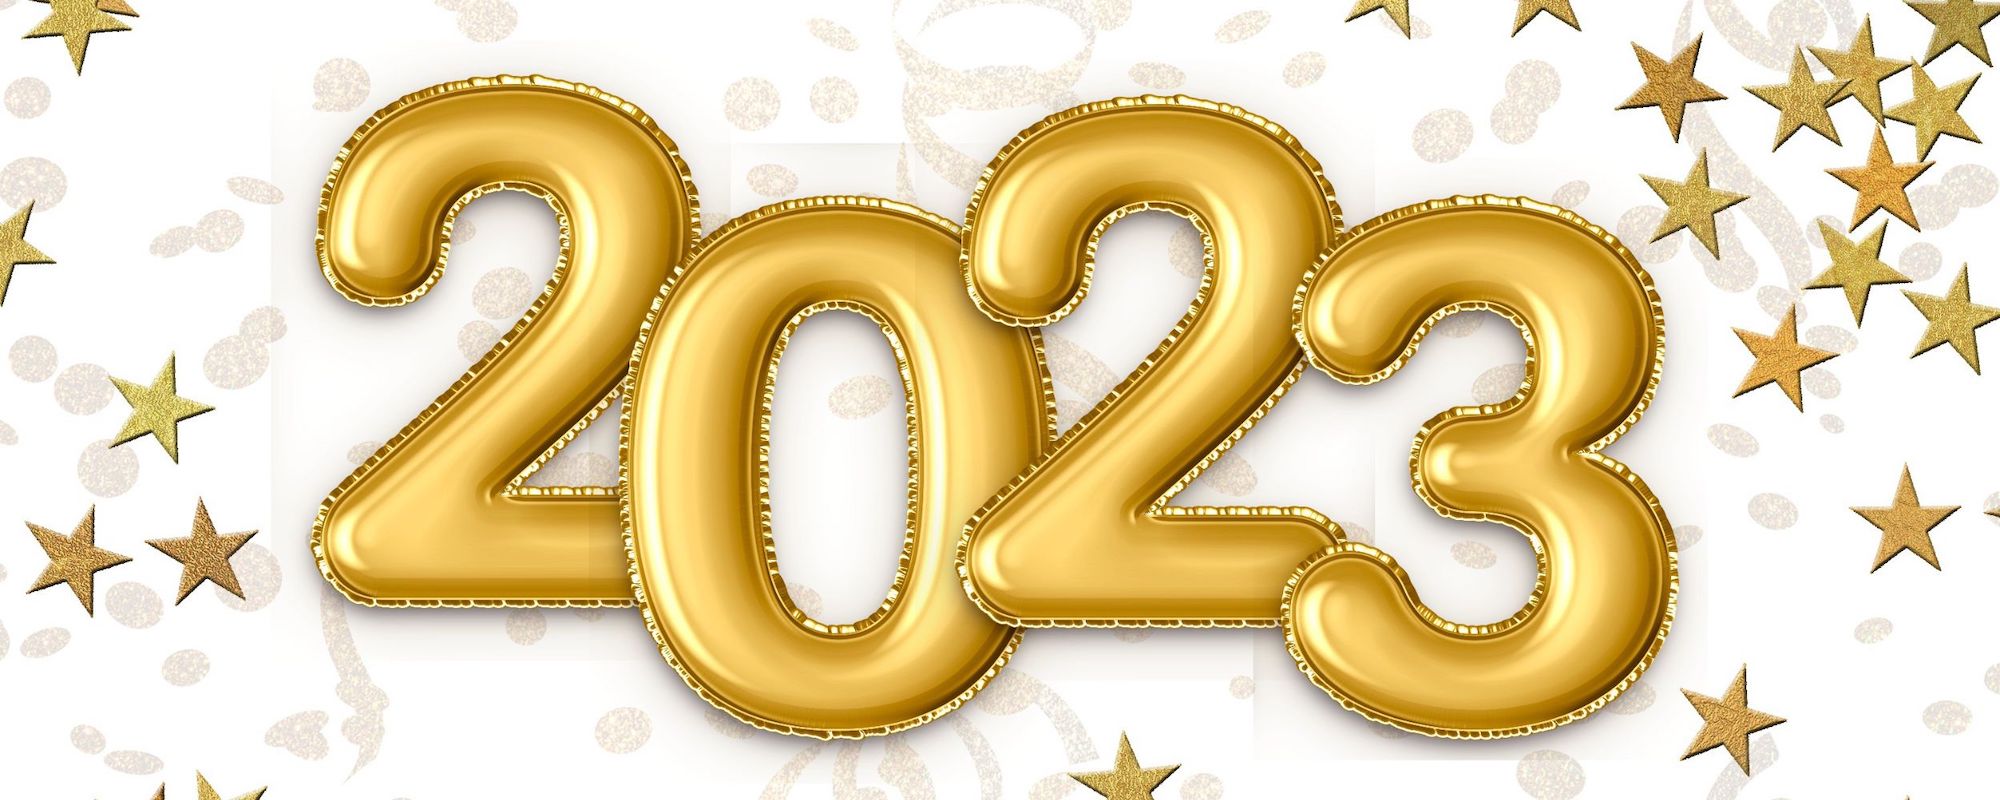 5 Cara Mudah Membuat 2023 Jadi Tahun Terbaik Untuk Kita